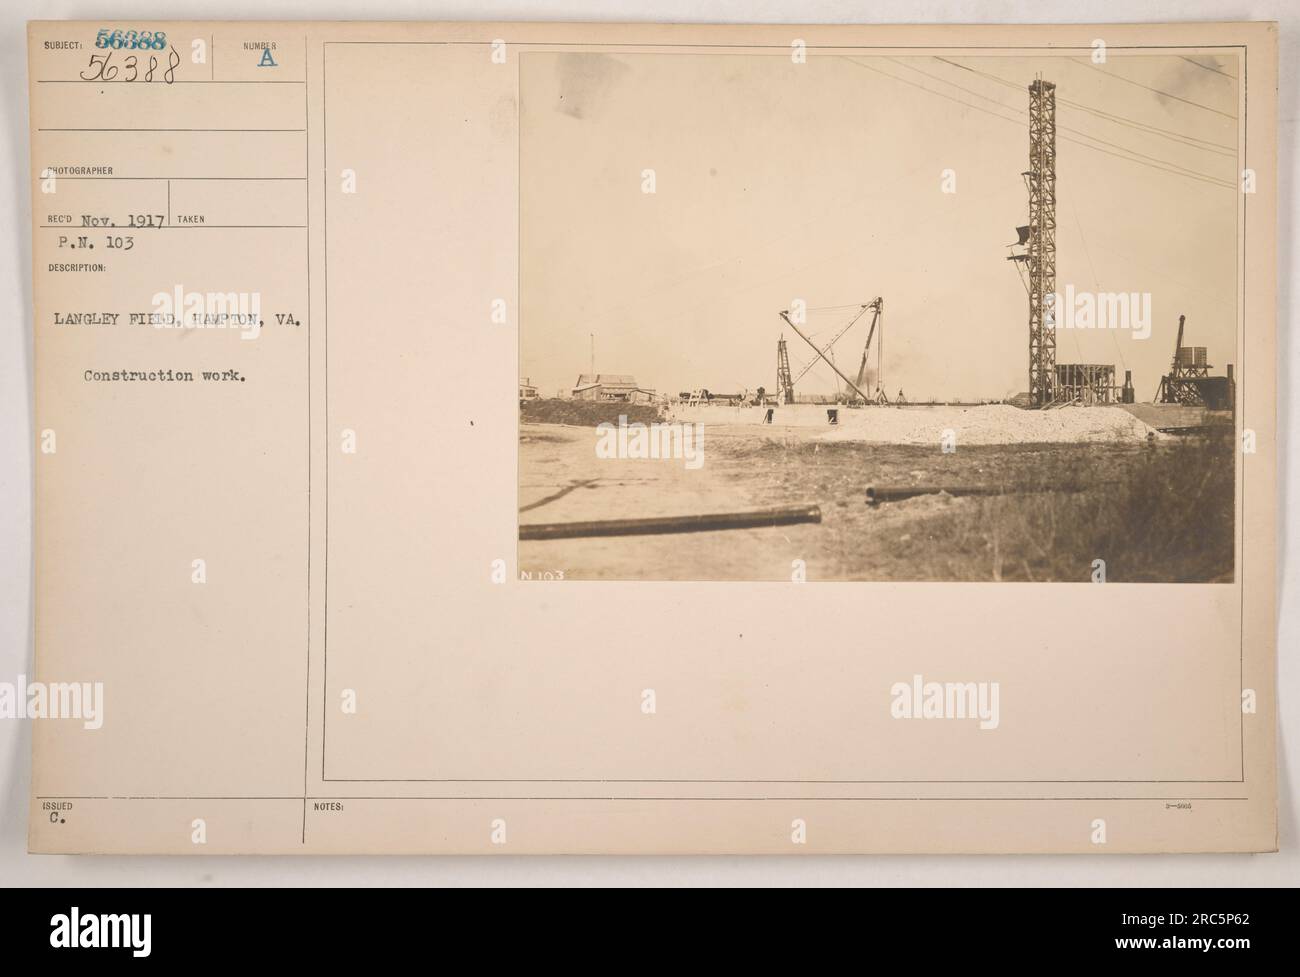 Bauarbeiten in Langley Field in Hampton, Virginia während des Ersten Weltkriegs. Das Foto, das als Subjekt 56388 gekennzeichnet ist, wurde im November 1917 am Nachmittag aufgenommen. Das Bild zeigt die laufenden Bauarbeiten auf dem Feld. Stockfoto